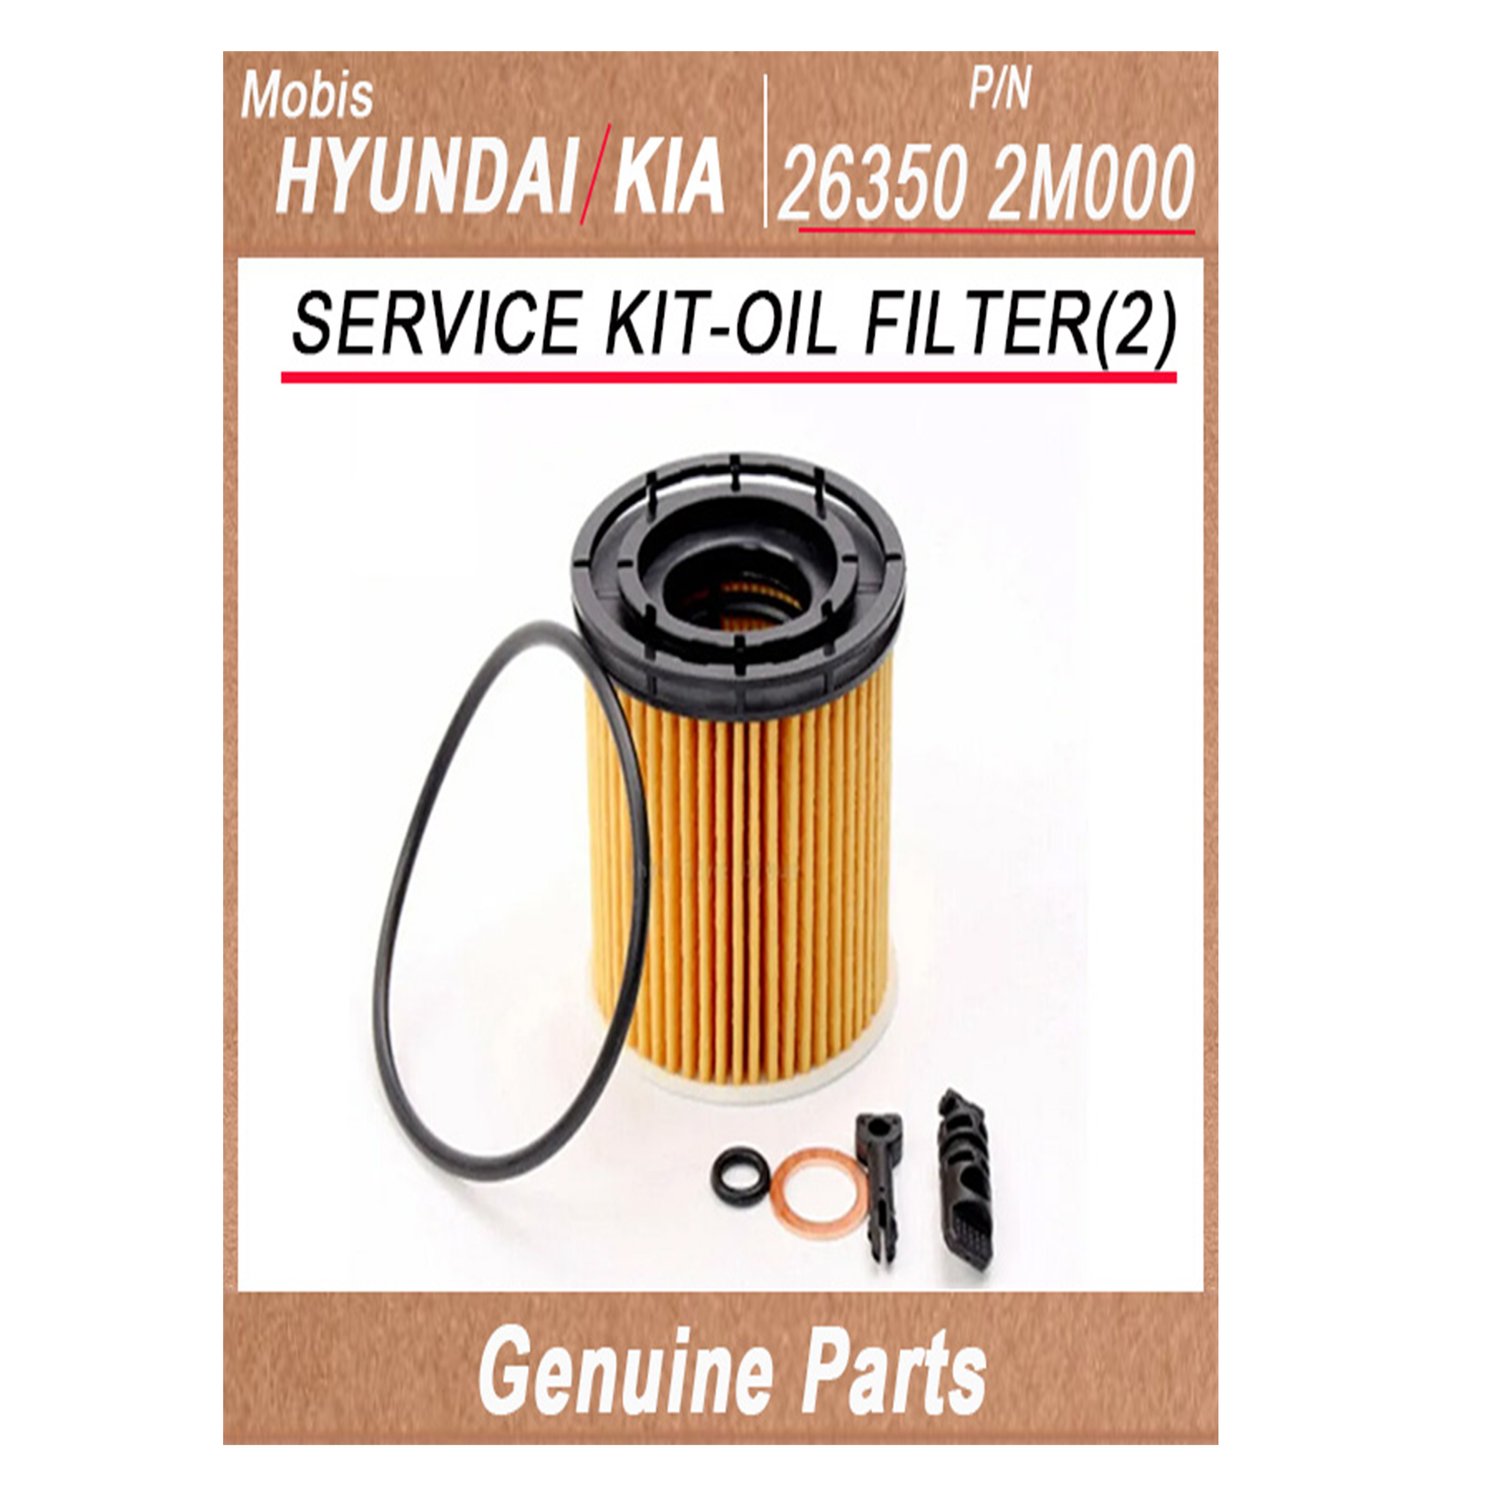 263502M000 _ SERVICE KIT_OIL FILTER_2_ _ Genuine Korean Automotive Spare Parts _ Hyundai Kia _Mobis_